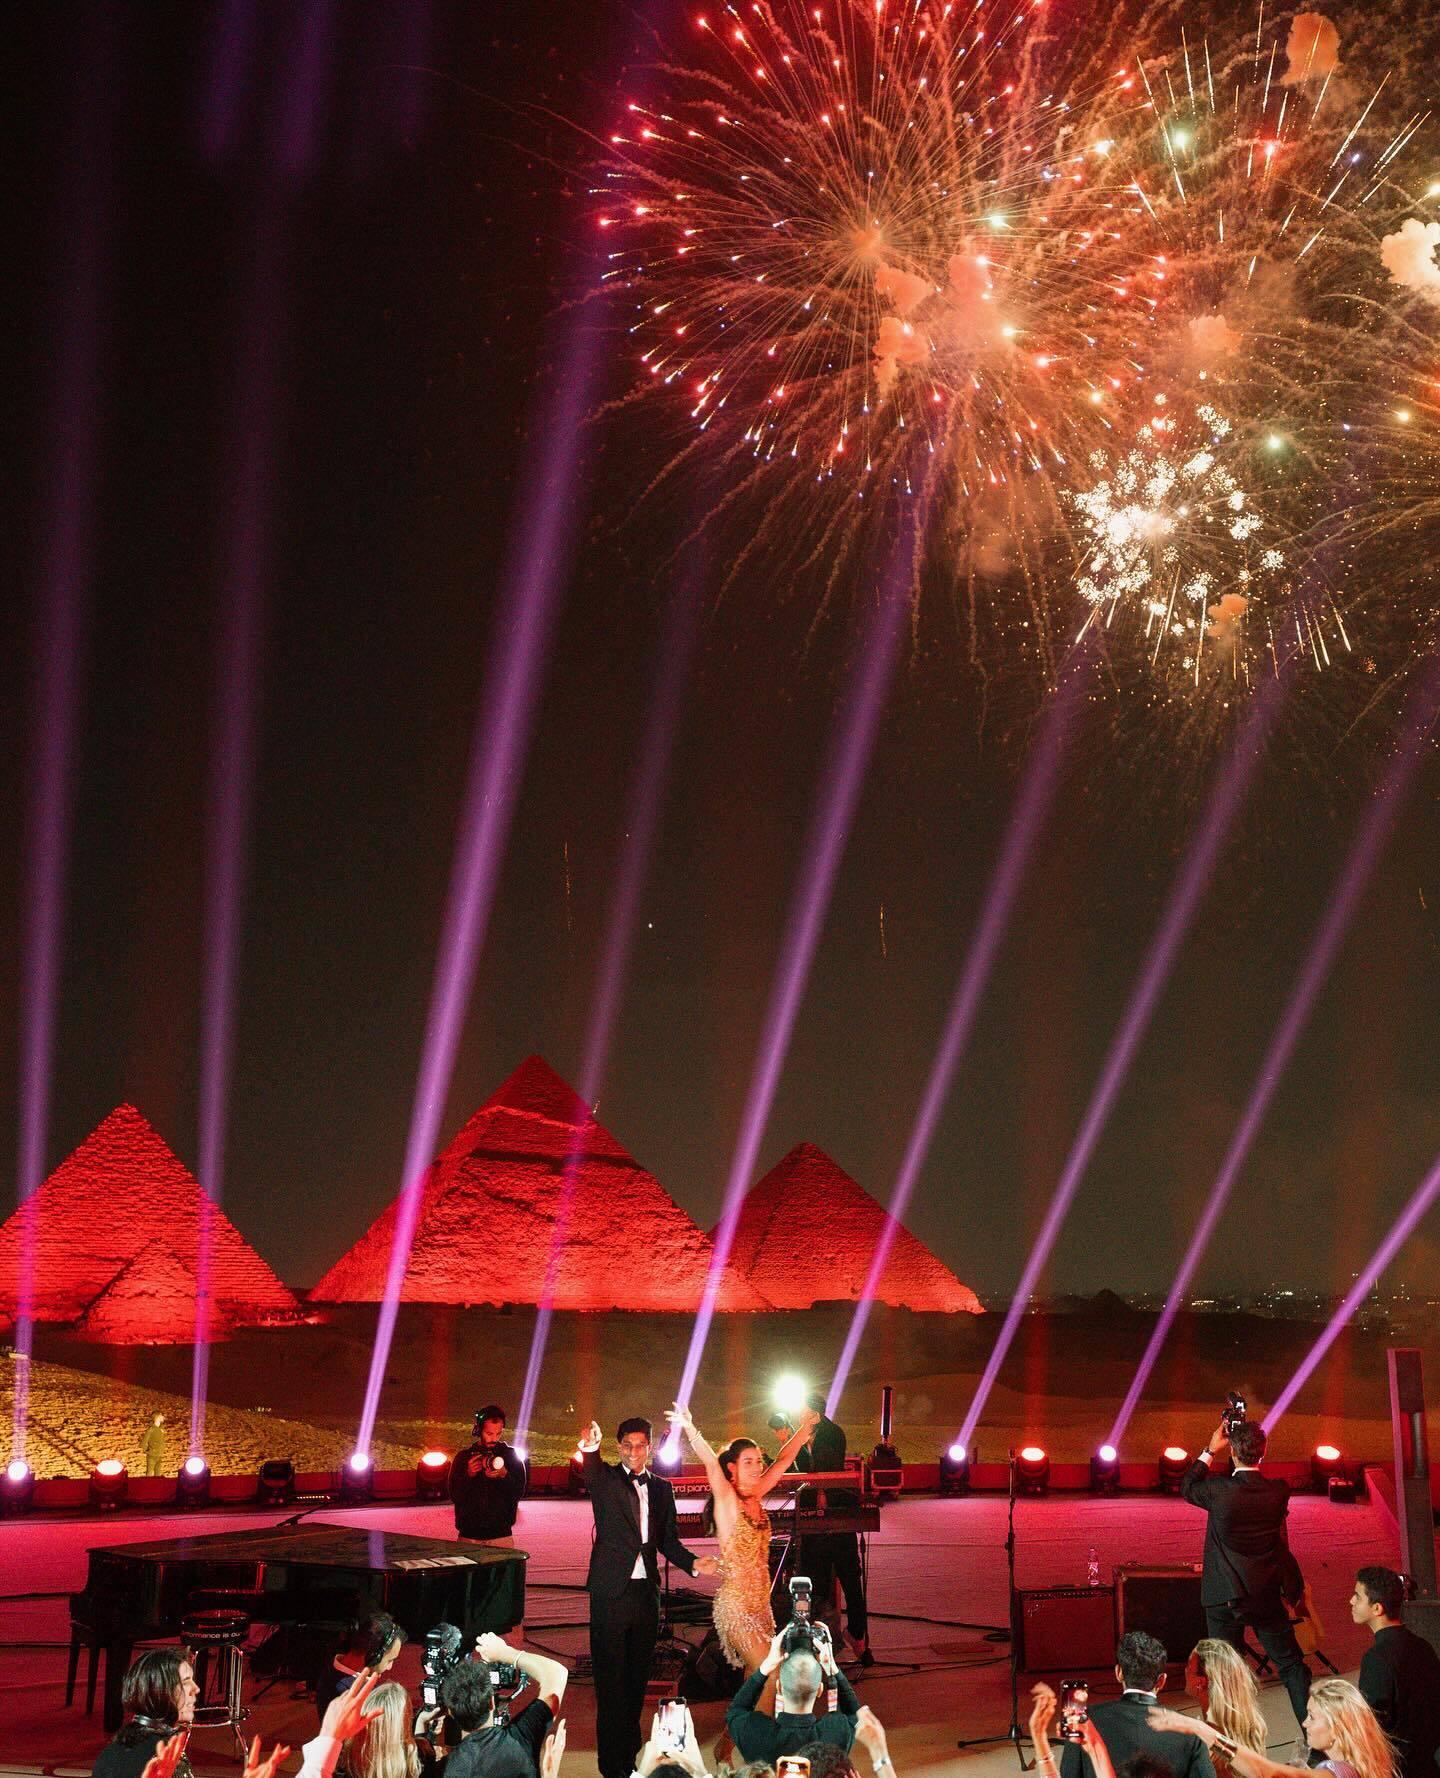 А могло бути в космосі. Американський мільярдер відсвяткував пишне весілля в Єгипті біля підніжжя пірамід